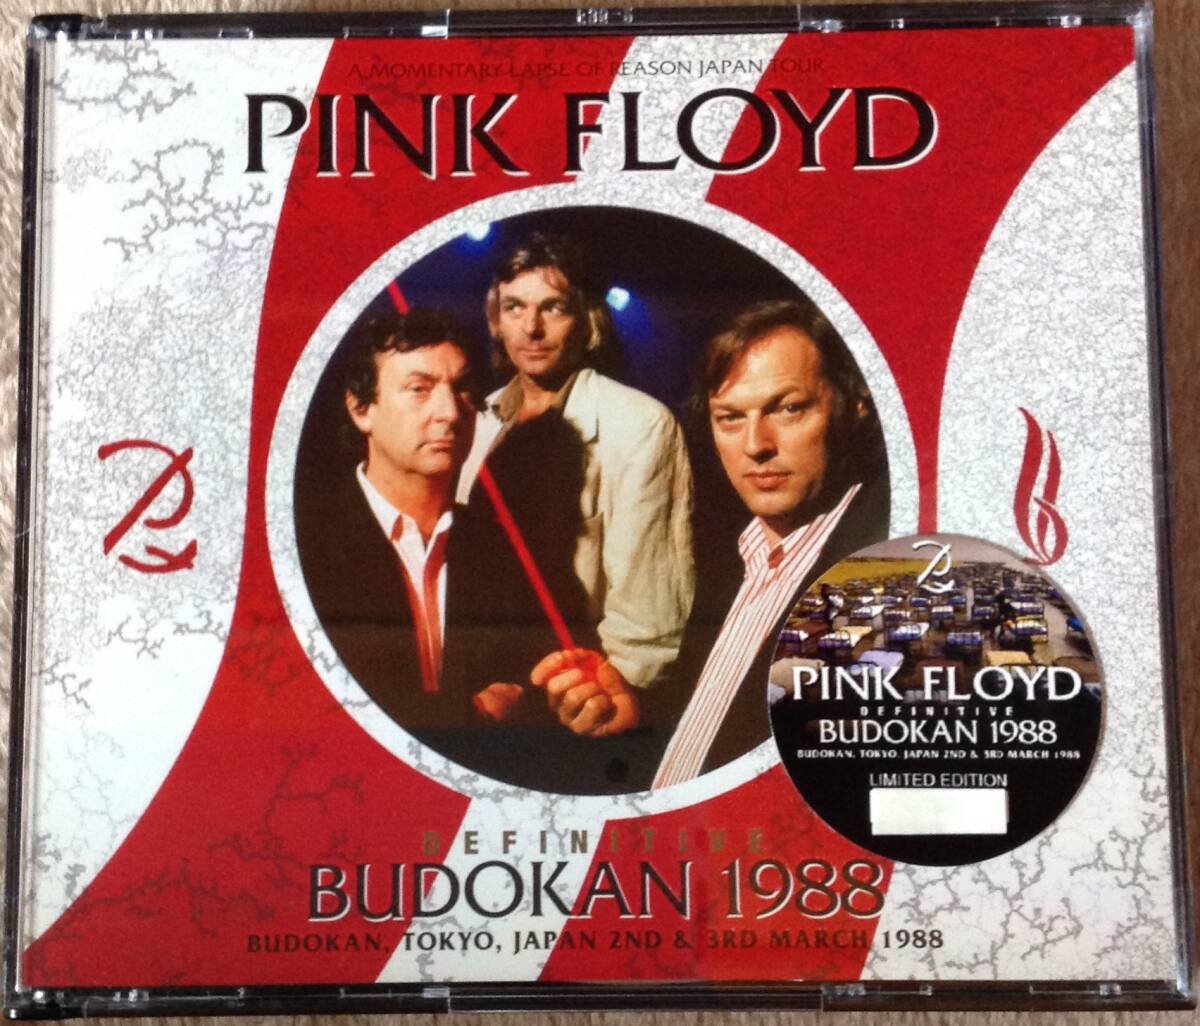 ★新品同様★名演ライブ 6CD PINK FLOYD ピンク・フロイド A Momentary Lapse of Reason 鬱 ツアー音源 Definitive Budokan 1988の画像1